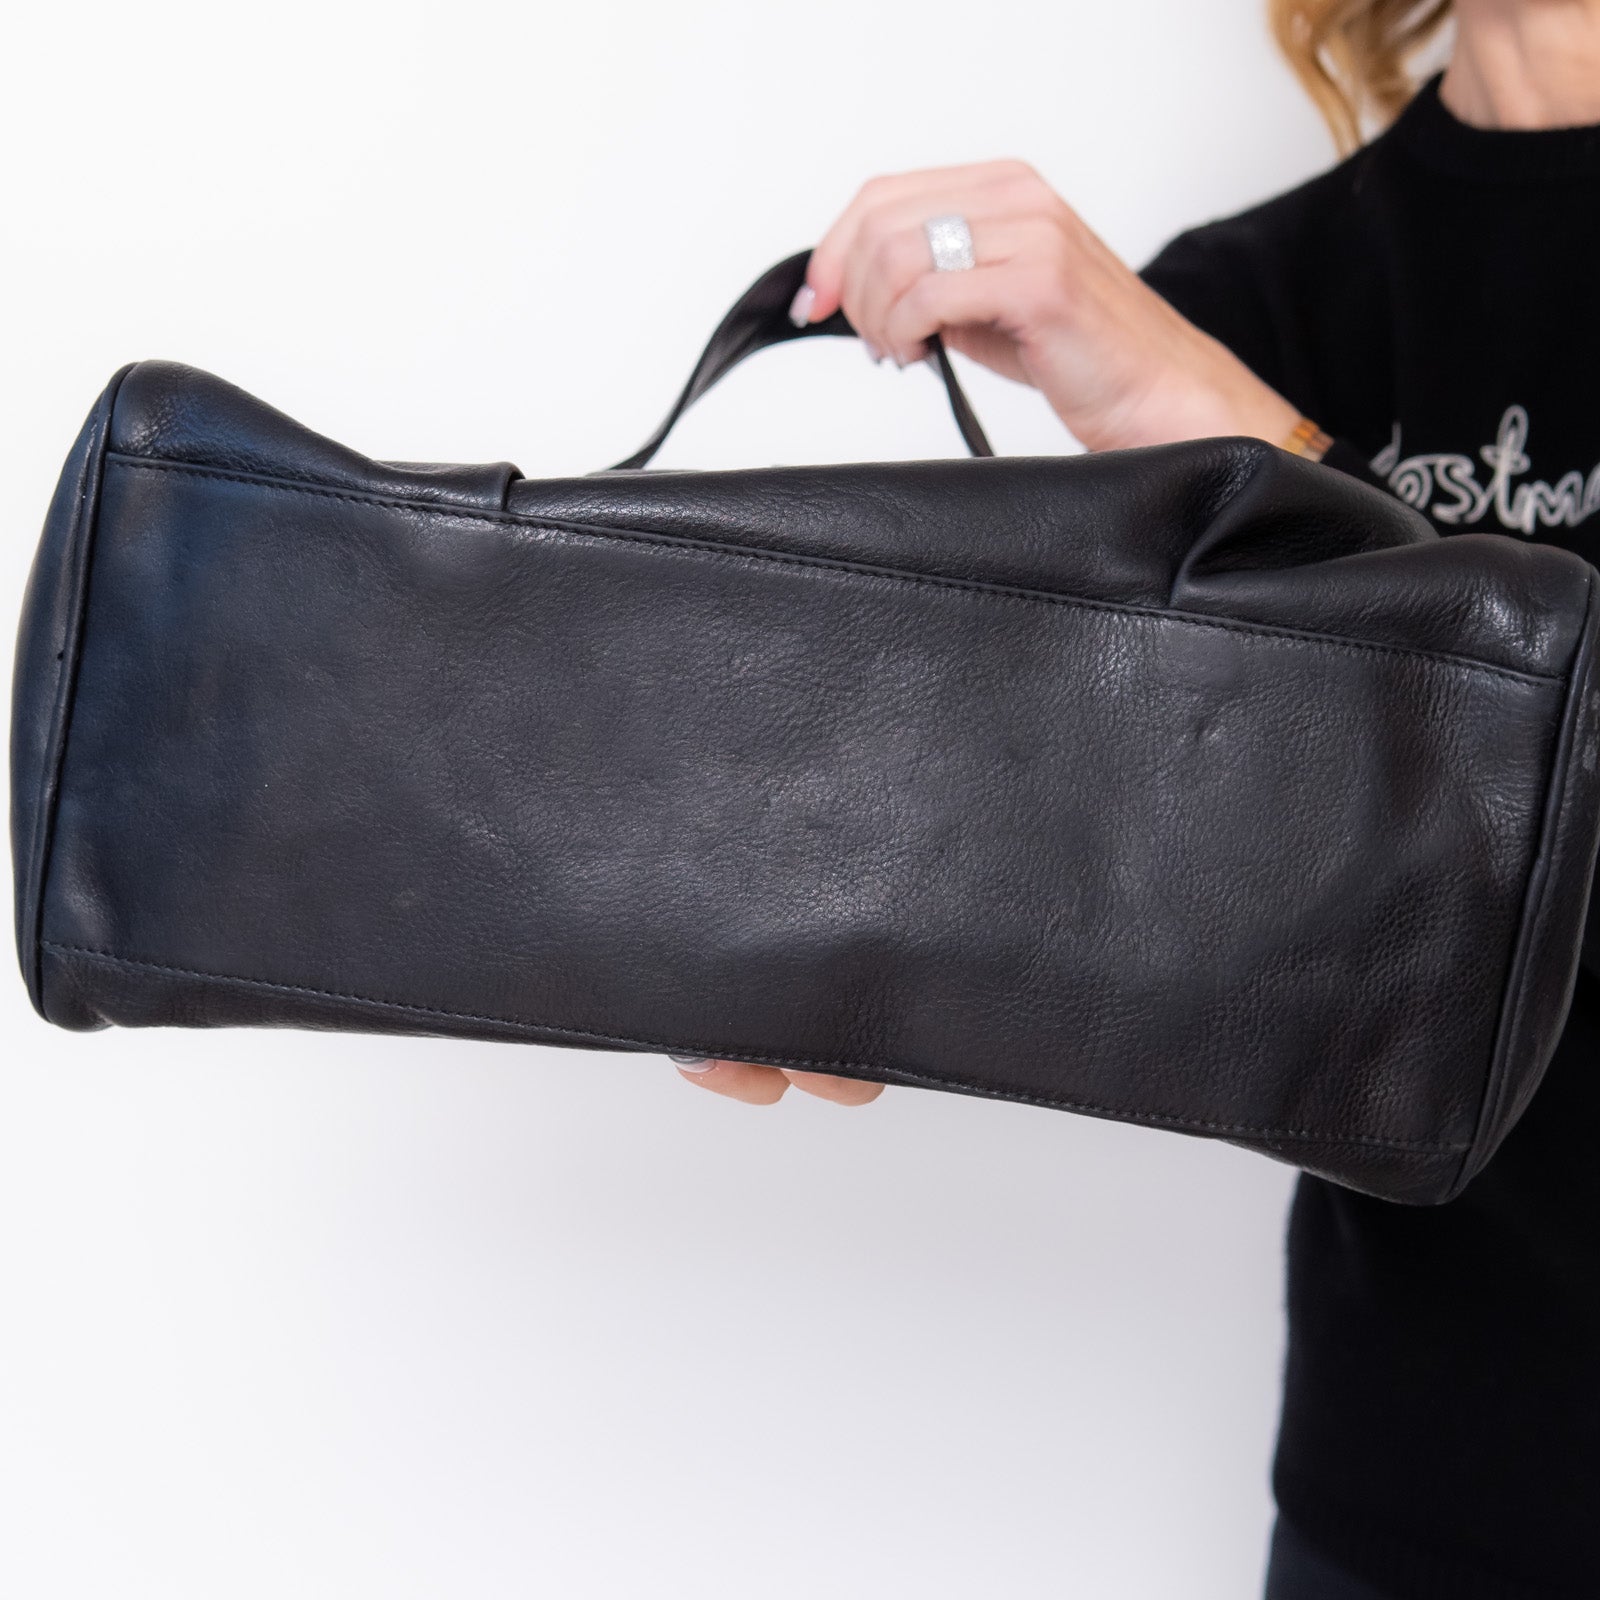 Erva Black Leather Bag - Image 6 of 7